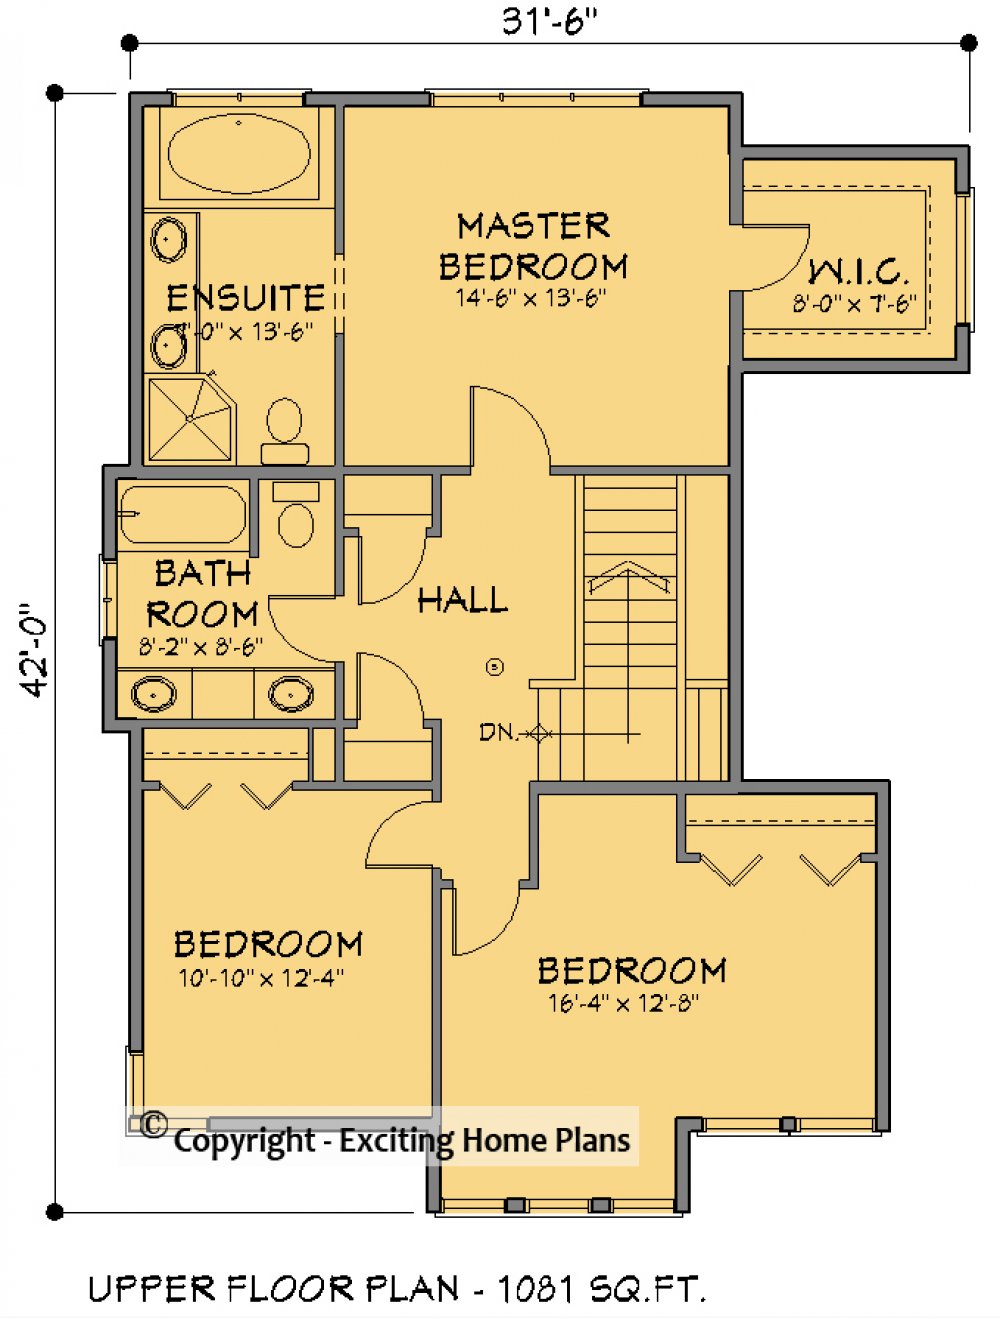 House Plan E1619-10 Upper Floor Plan